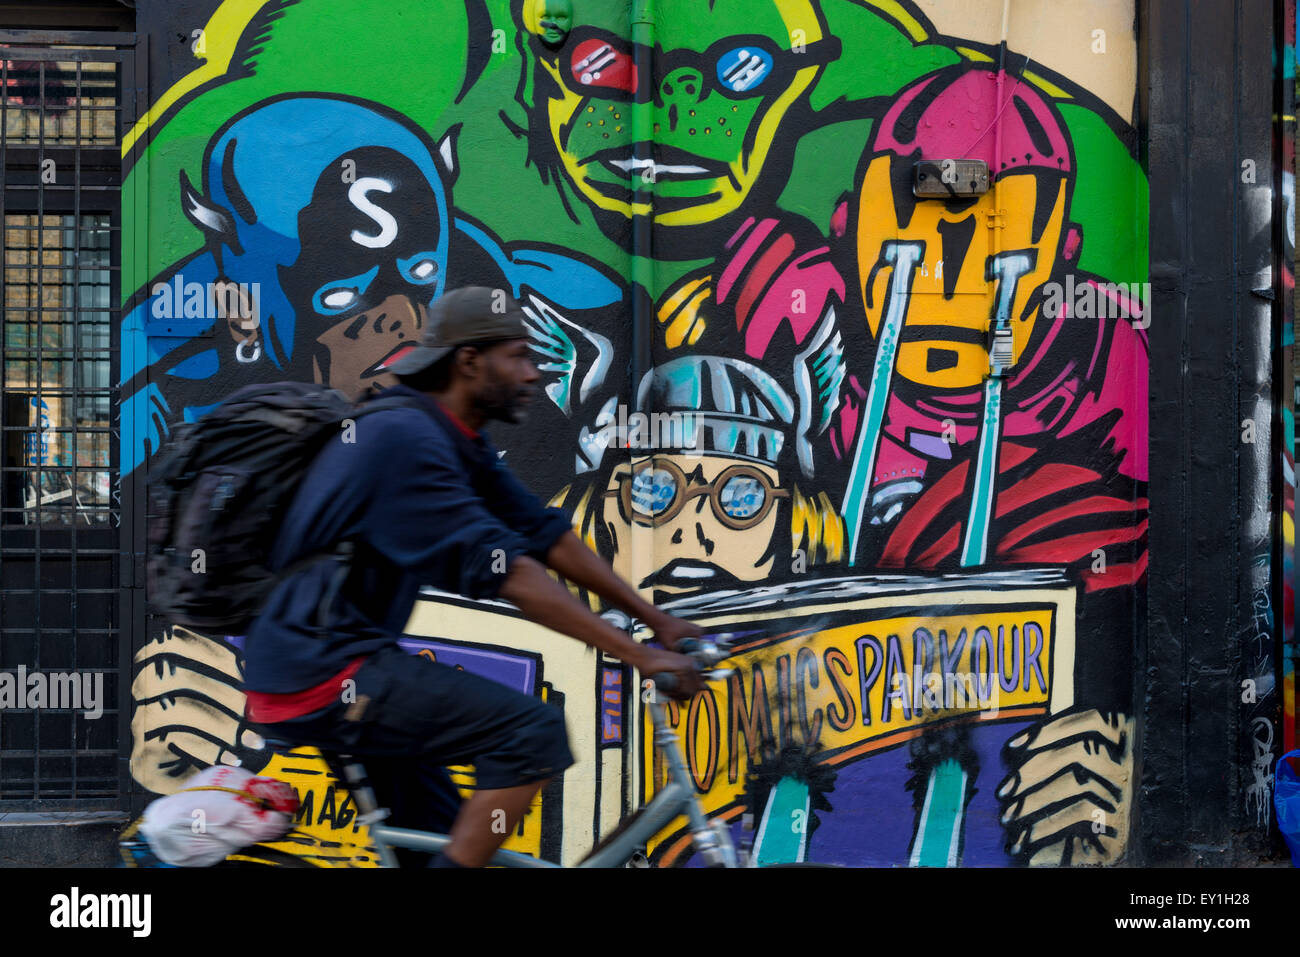 Londra è una delle più grandi e migliori collezioni di radiato arte di strada in tutto il mondo. Artisti locali ed internazionali hanno decorato le strade di Londra con una sbalorditiva schiera di lavori creativi. 19 Luglio, 2015. © Velar concedere/ZUMA filo/ZUMAPRESS.com/Alamy Live News Foto Stock